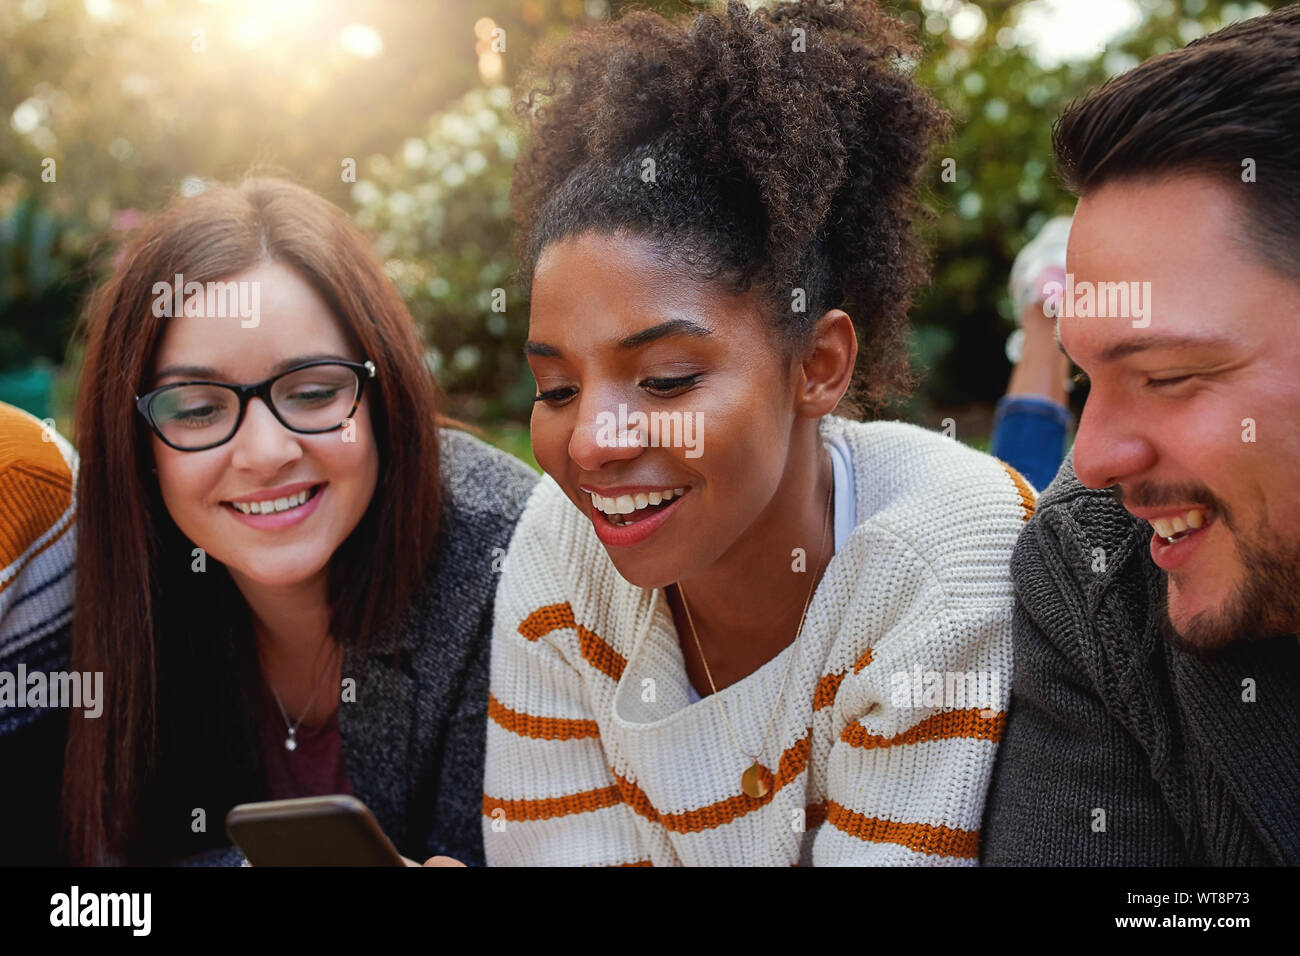 Ritratto di un sorridente americano africano giovane donna con i suoi amici a guardare il telefono cellulare nel parco - caldo sole flare nella lente Foto Stock